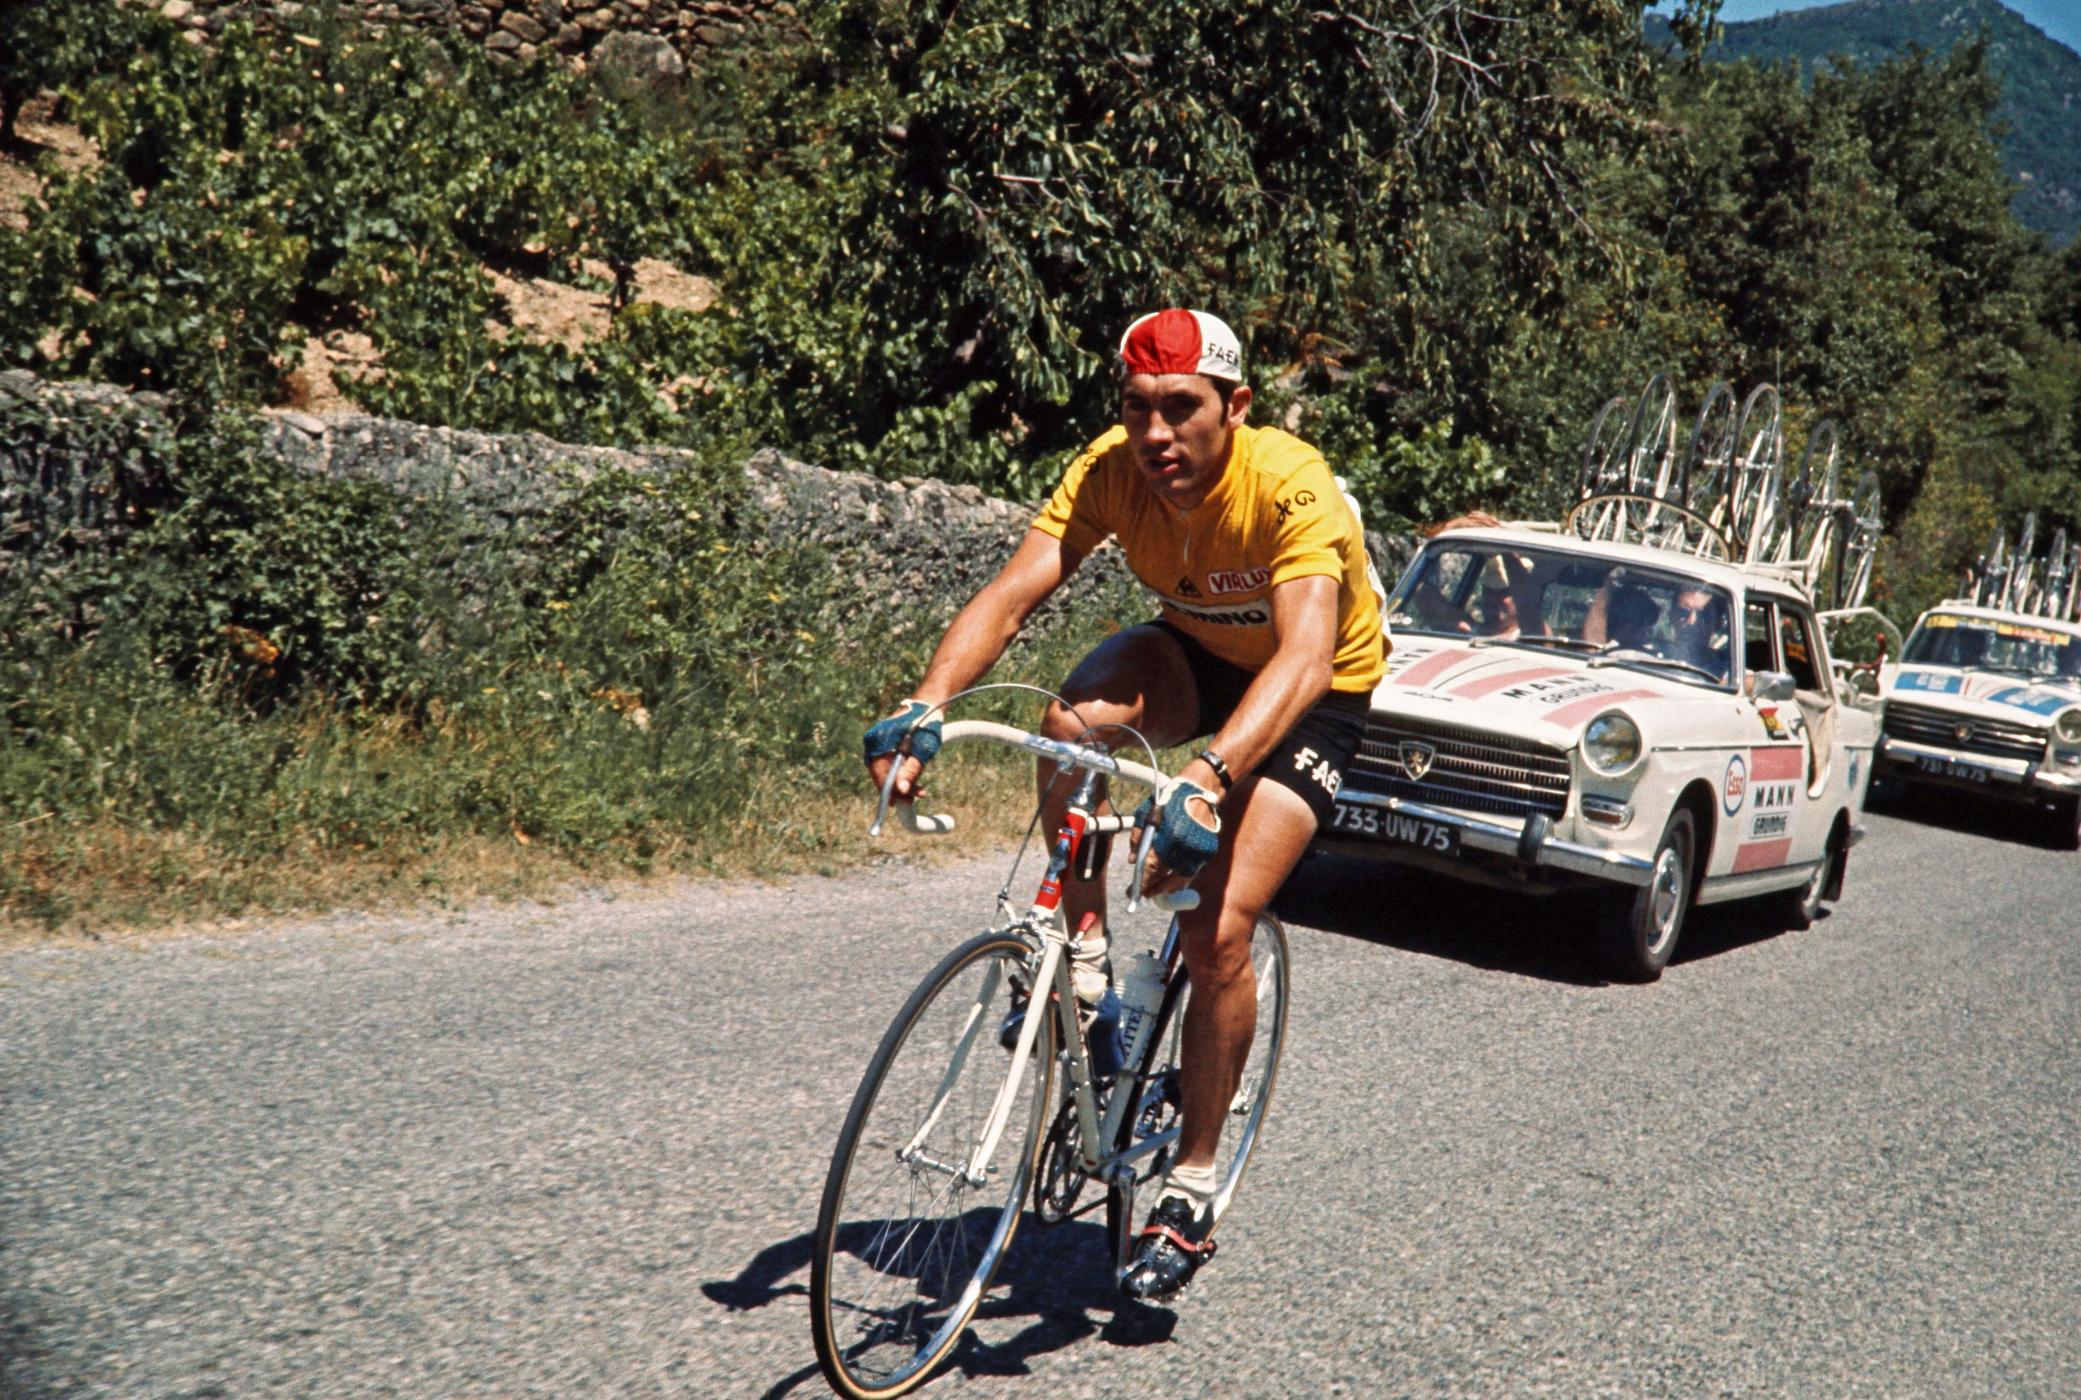 1970 gewann Eddy Merckx seine erste Tour de France